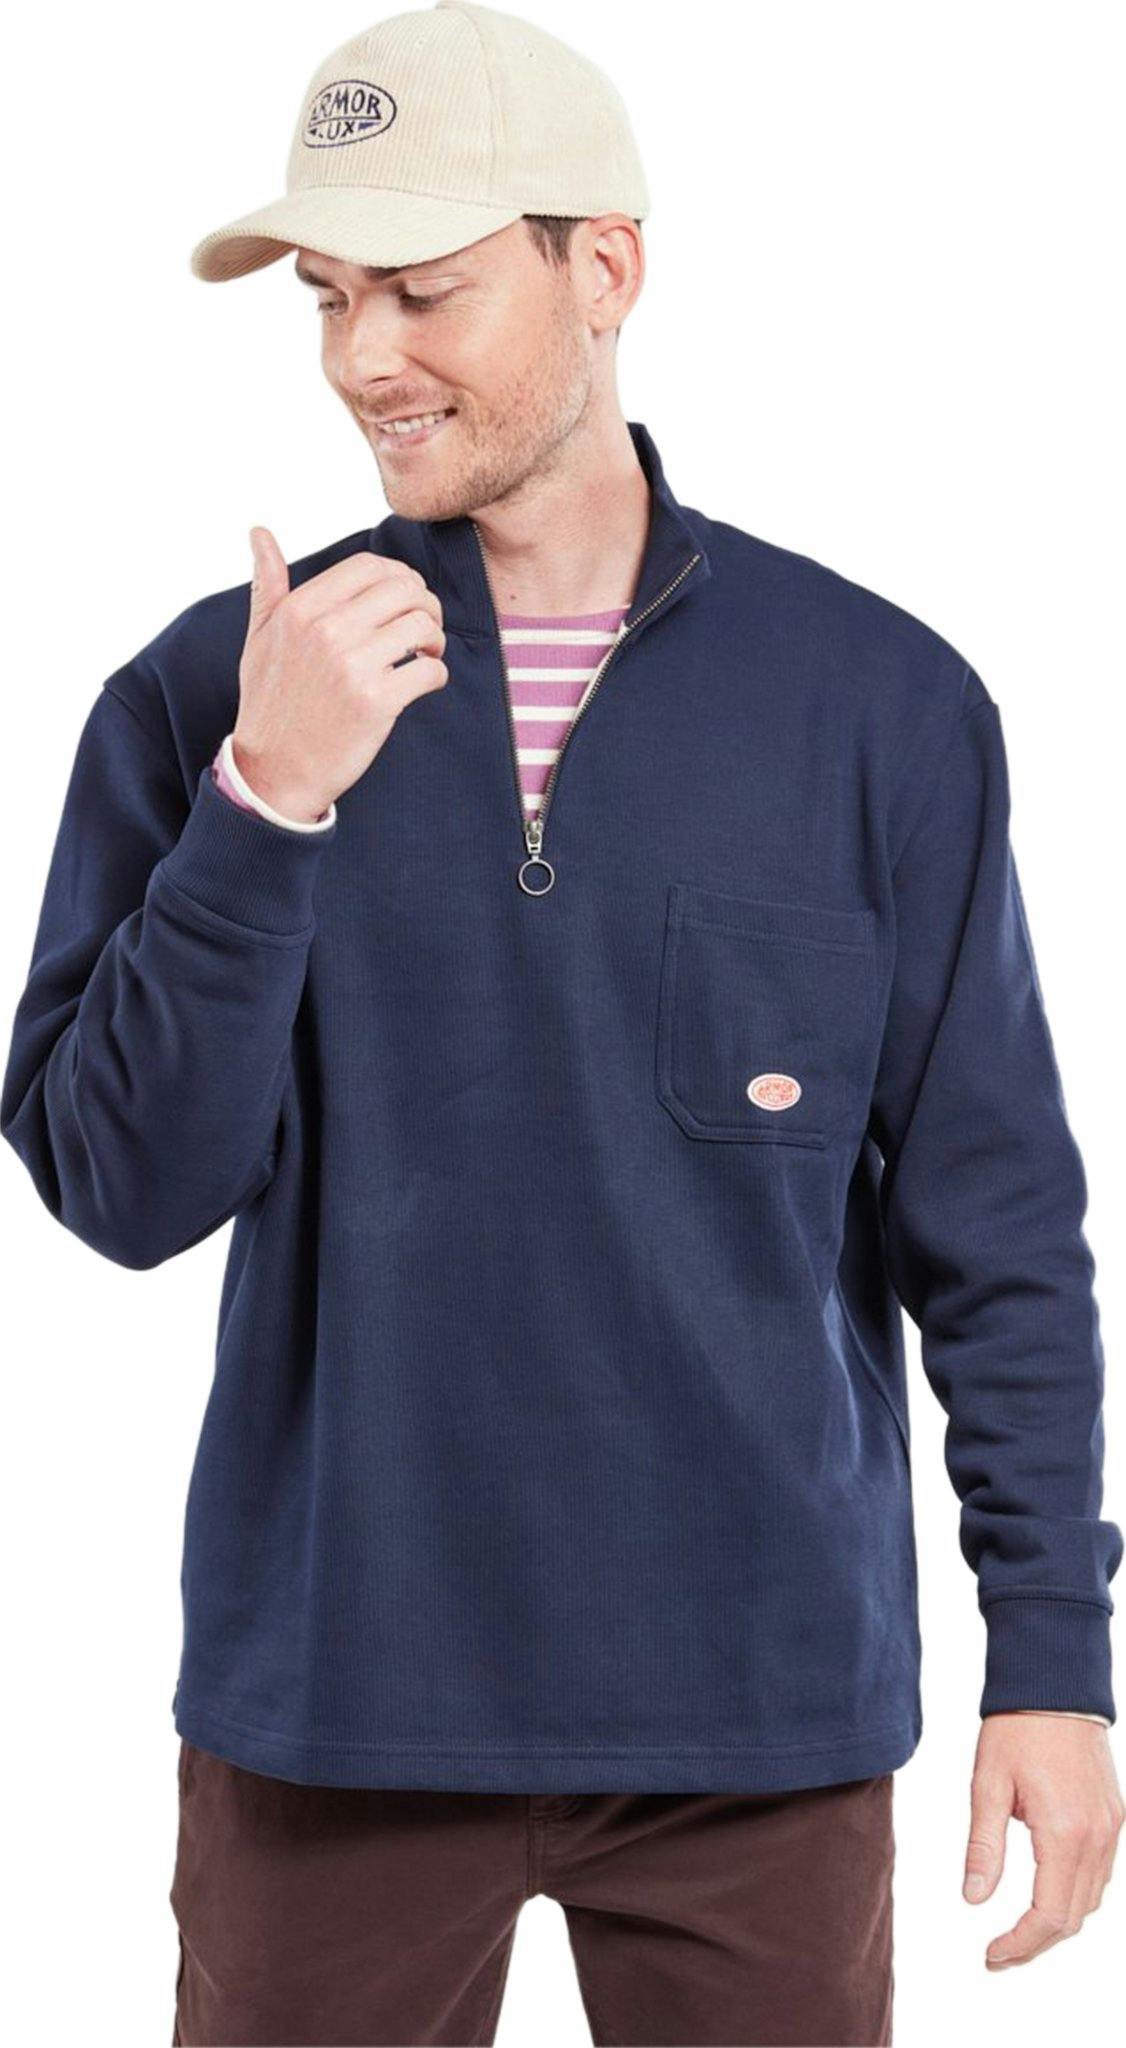 Product image for Heritage Zip-Neck Sweatshirt - Men's